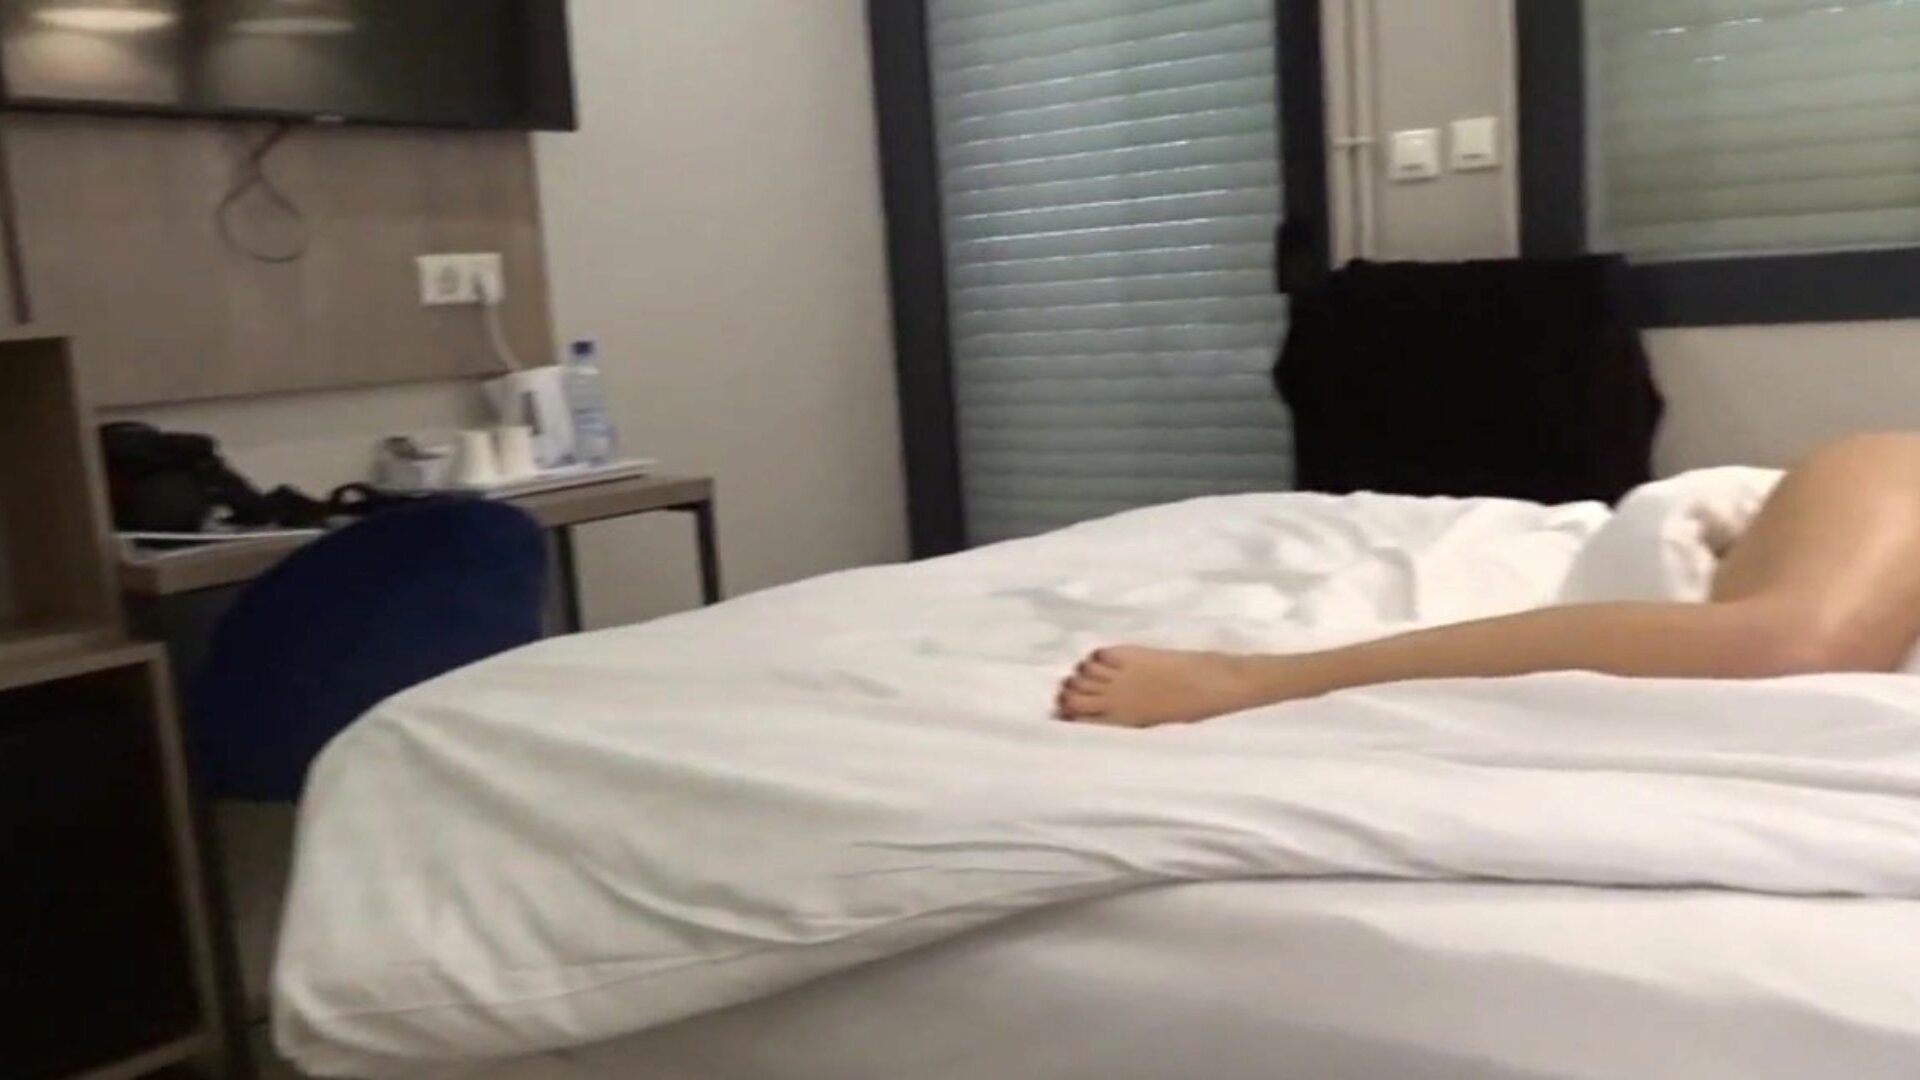 קרלה-ג עירומה בסרטון המלון בו אני מתפשט על מיטתי בחדר האורחים במלון ובשירותים